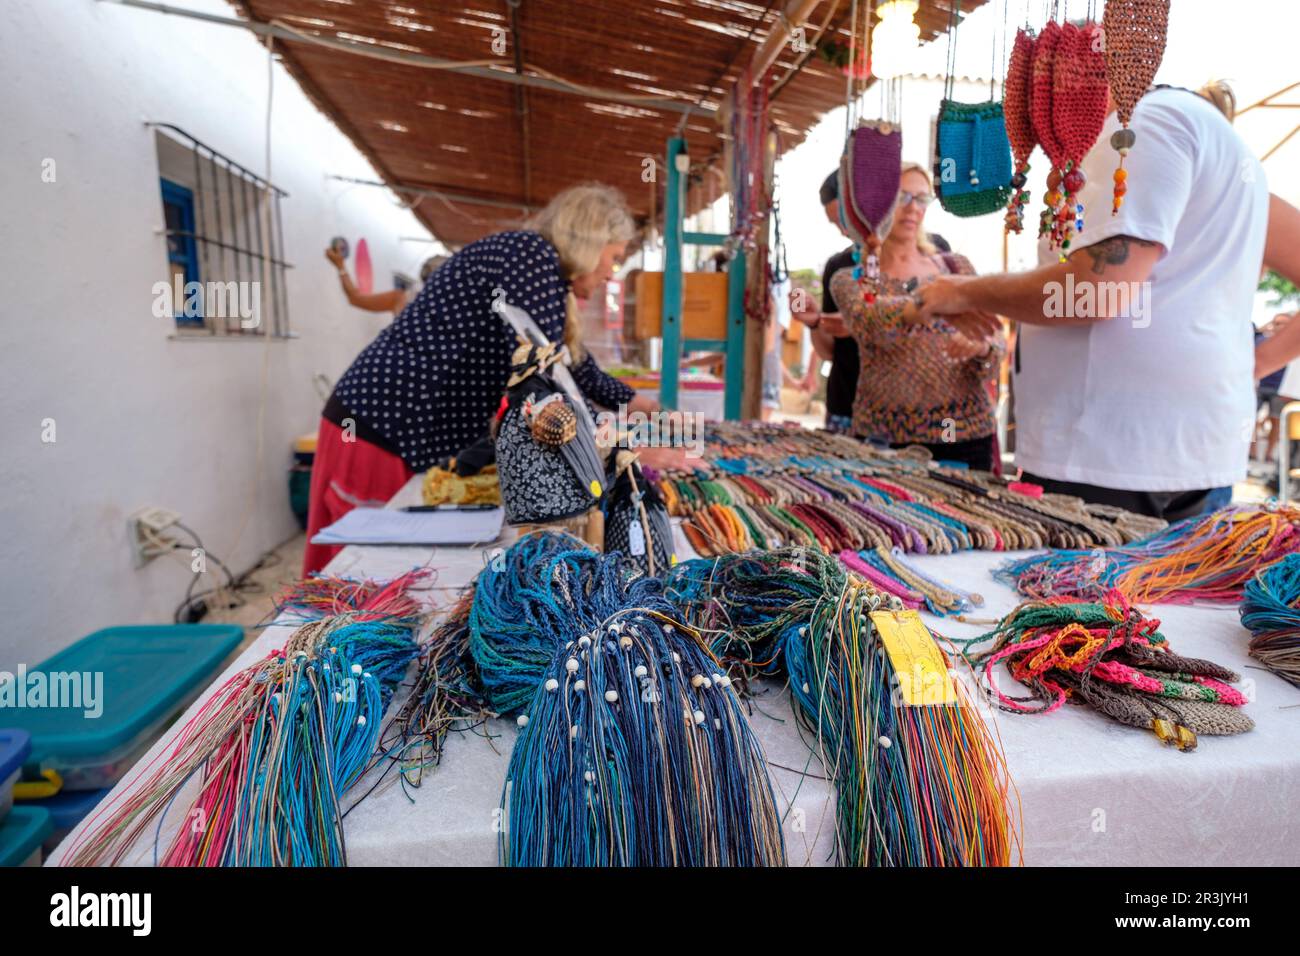 Mercadillo Hippie, Feria Artesal de La Mola, el Pilar de la Mola, Formentera, balearic islands, Spain. Stock Photo